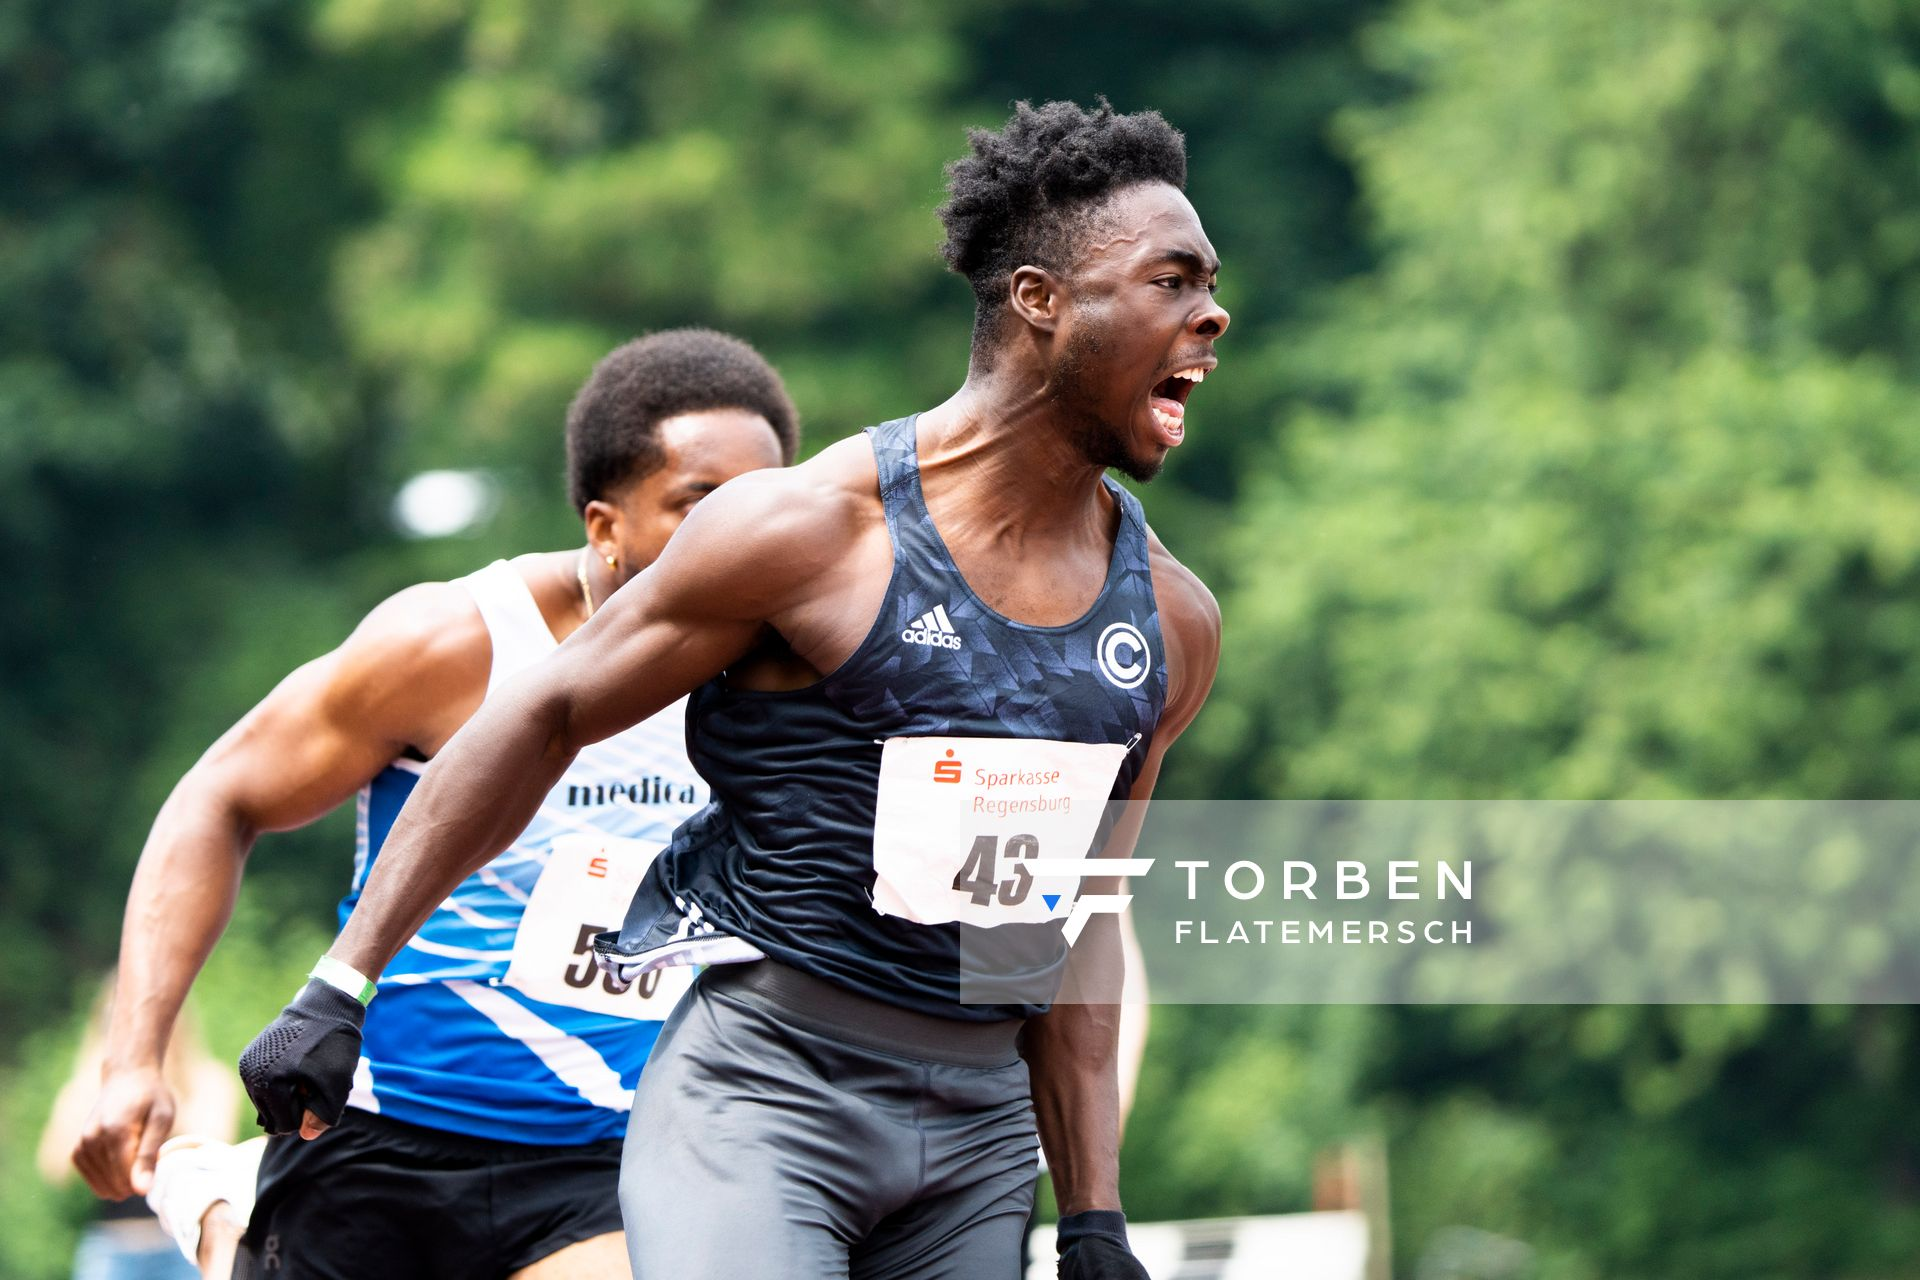 James Adebola (SCC Berlin) ueber 100m am 04.06.2022 waehrend der Sparkassen Gala in Regensburg